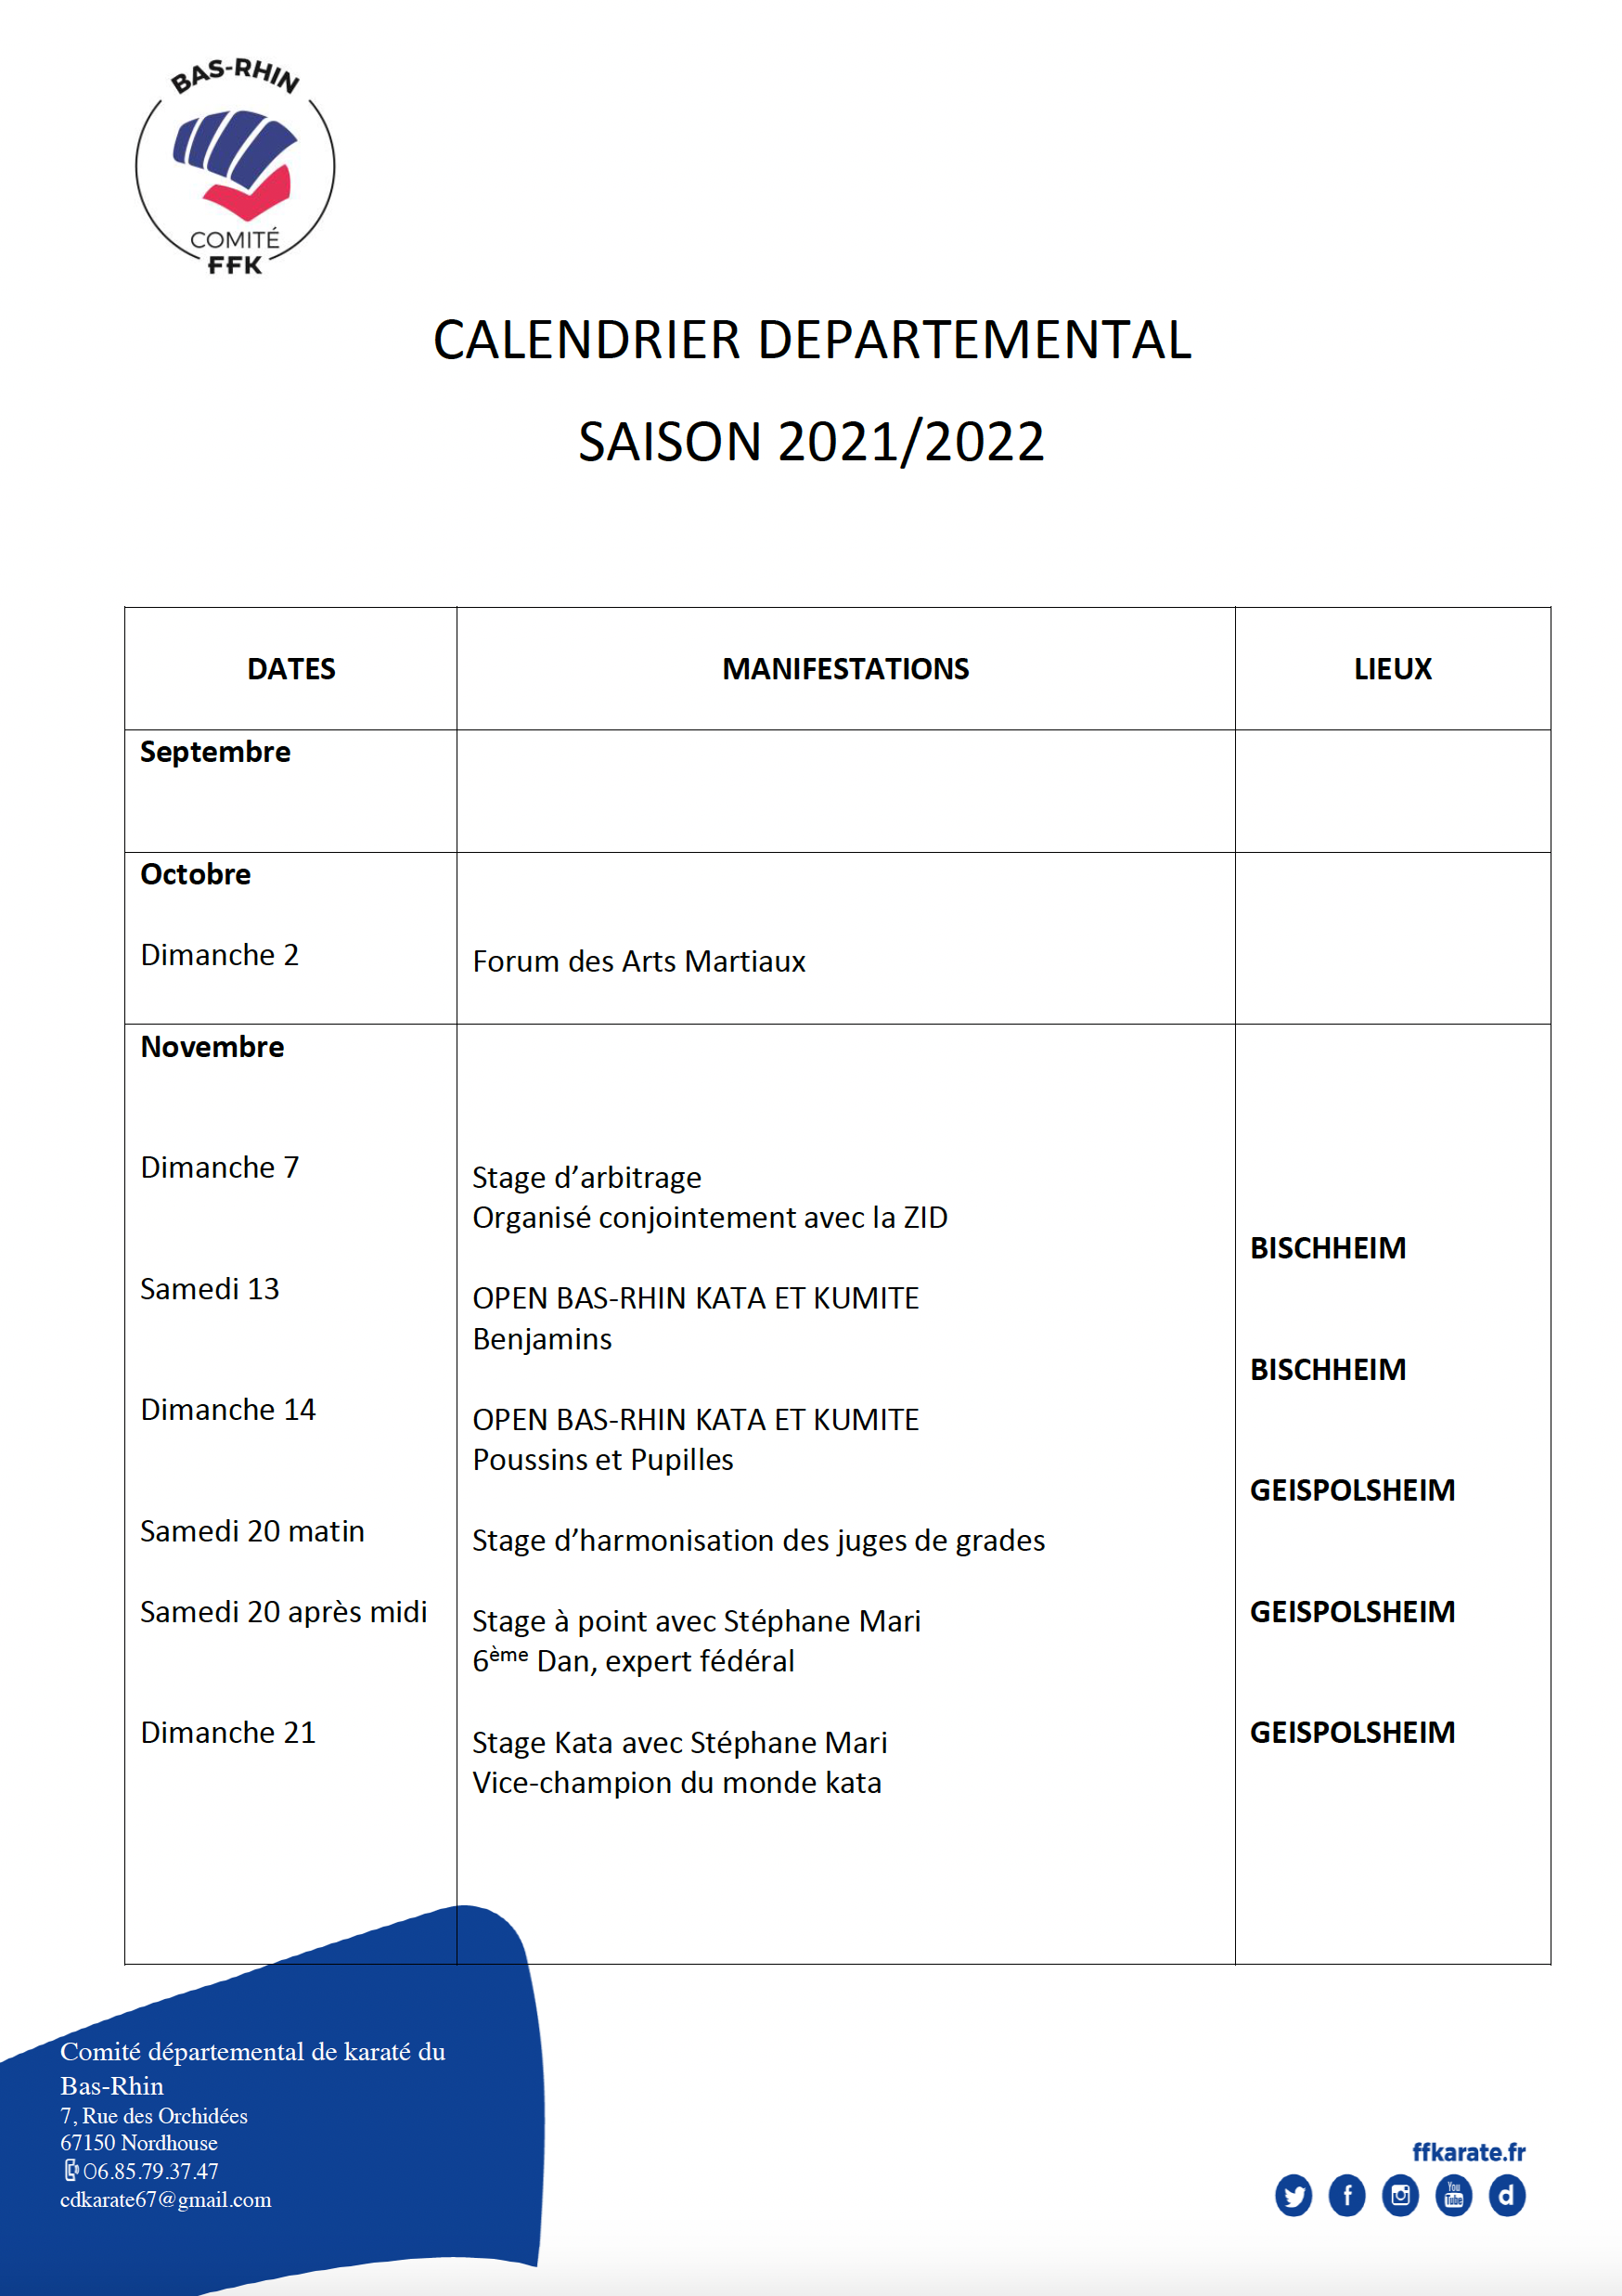 Calendrier départemental Saison 2021 / 22